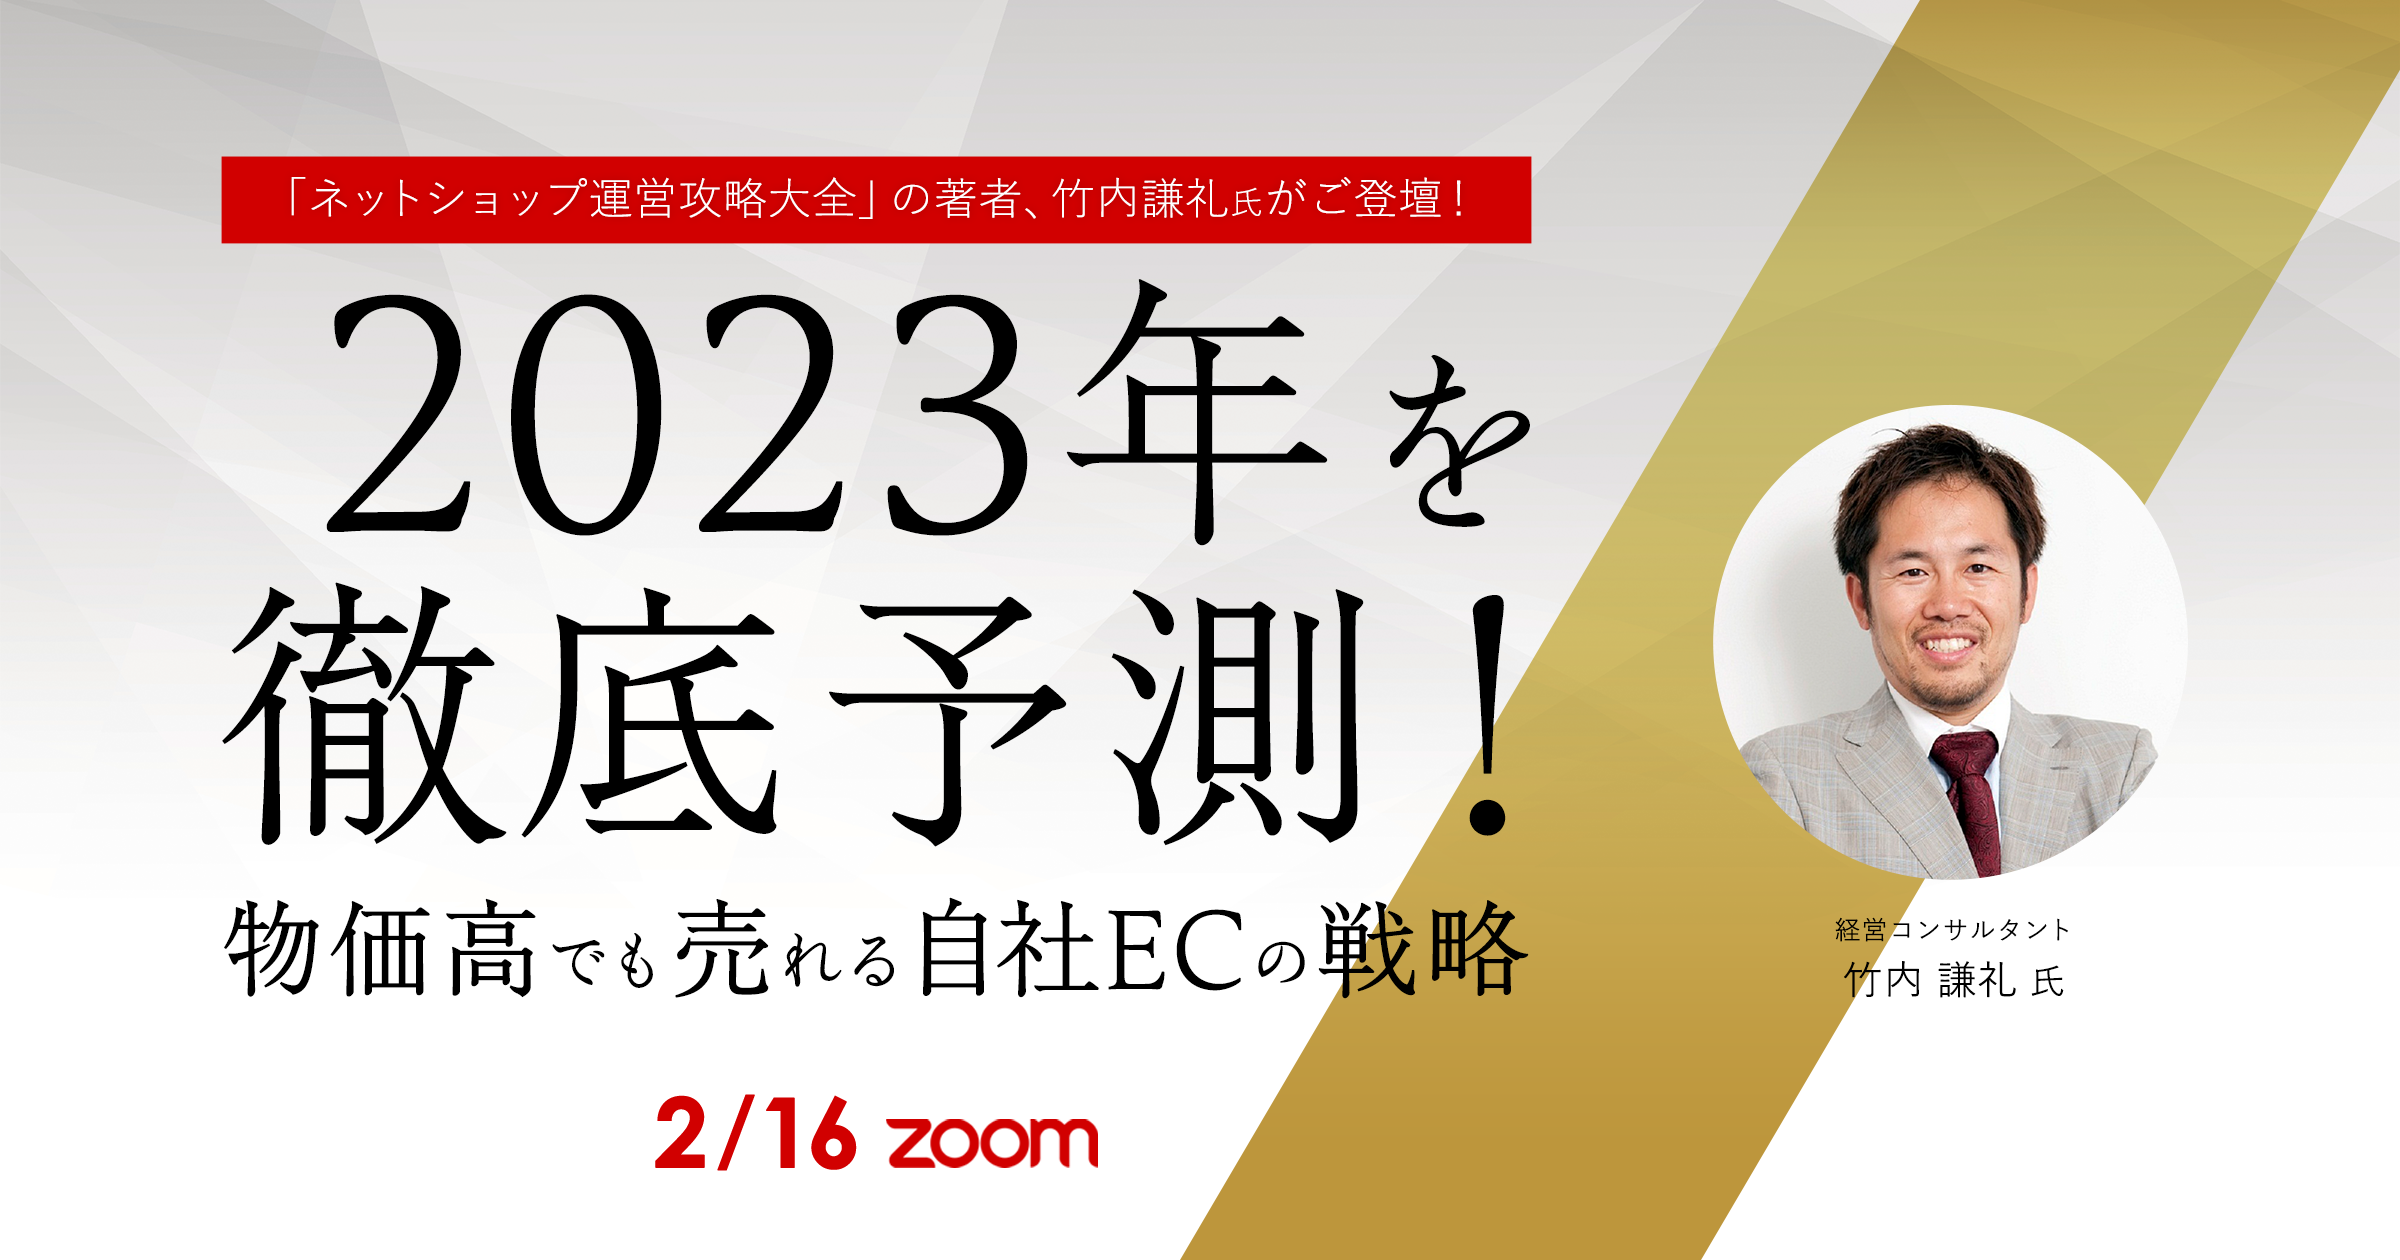 《「ネットショップ運営攻略大全」の著者、竹内謙礼氏がご登壇！》2023年を徹底予測！ 物価高でも売れる自社ECの戦略